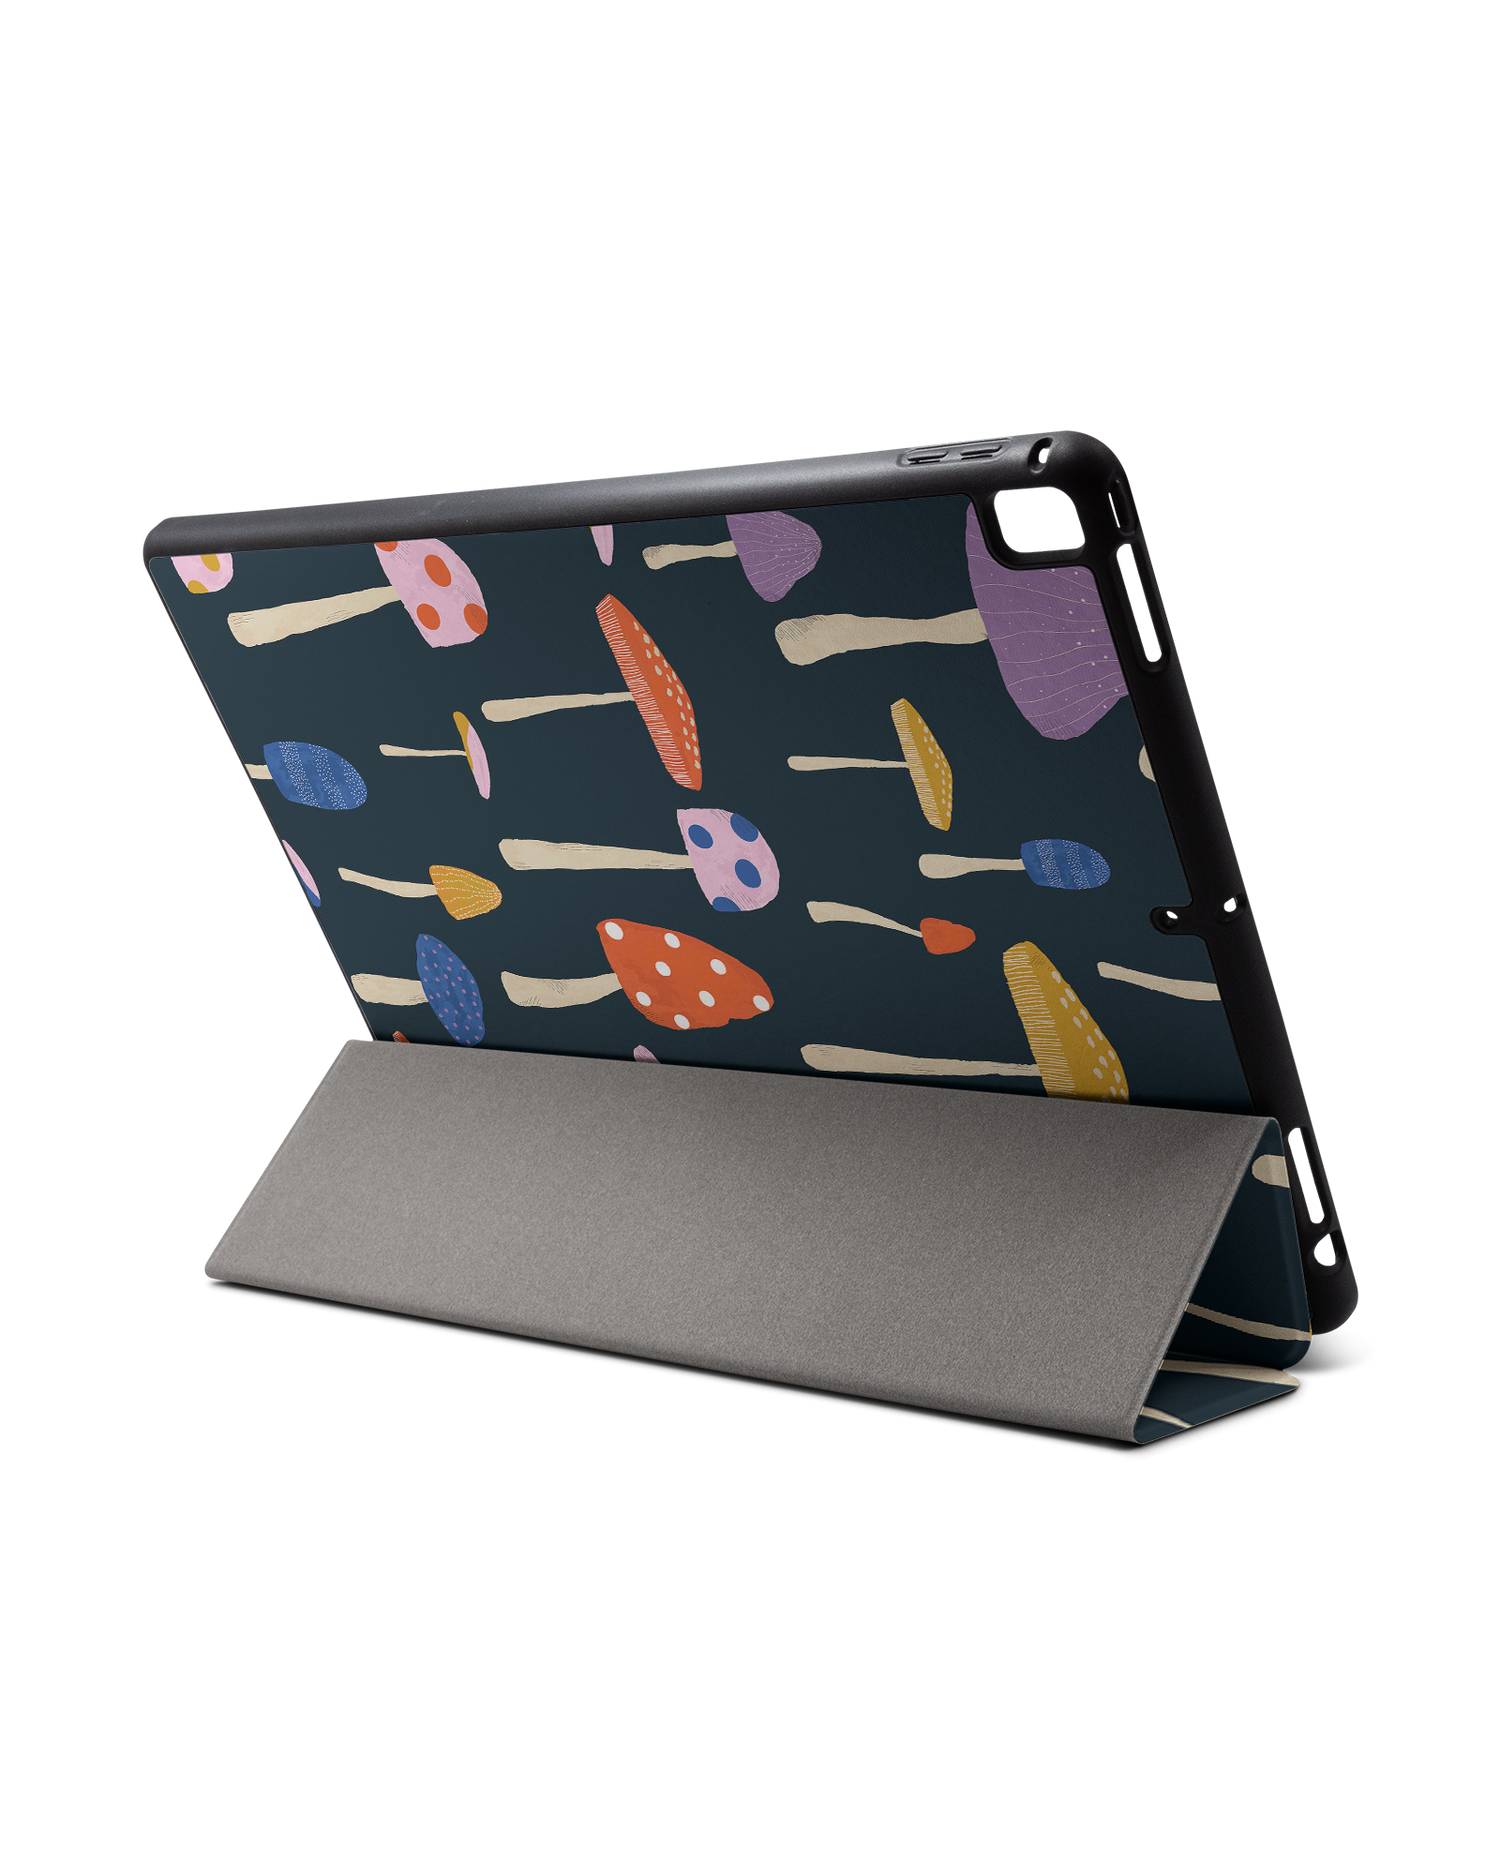 Mushroom Delights iPad Hülle mit Stifthalter für Apple iPad Pro 2 12.9'' (2017): Aufgestellt im Querformat von hinten